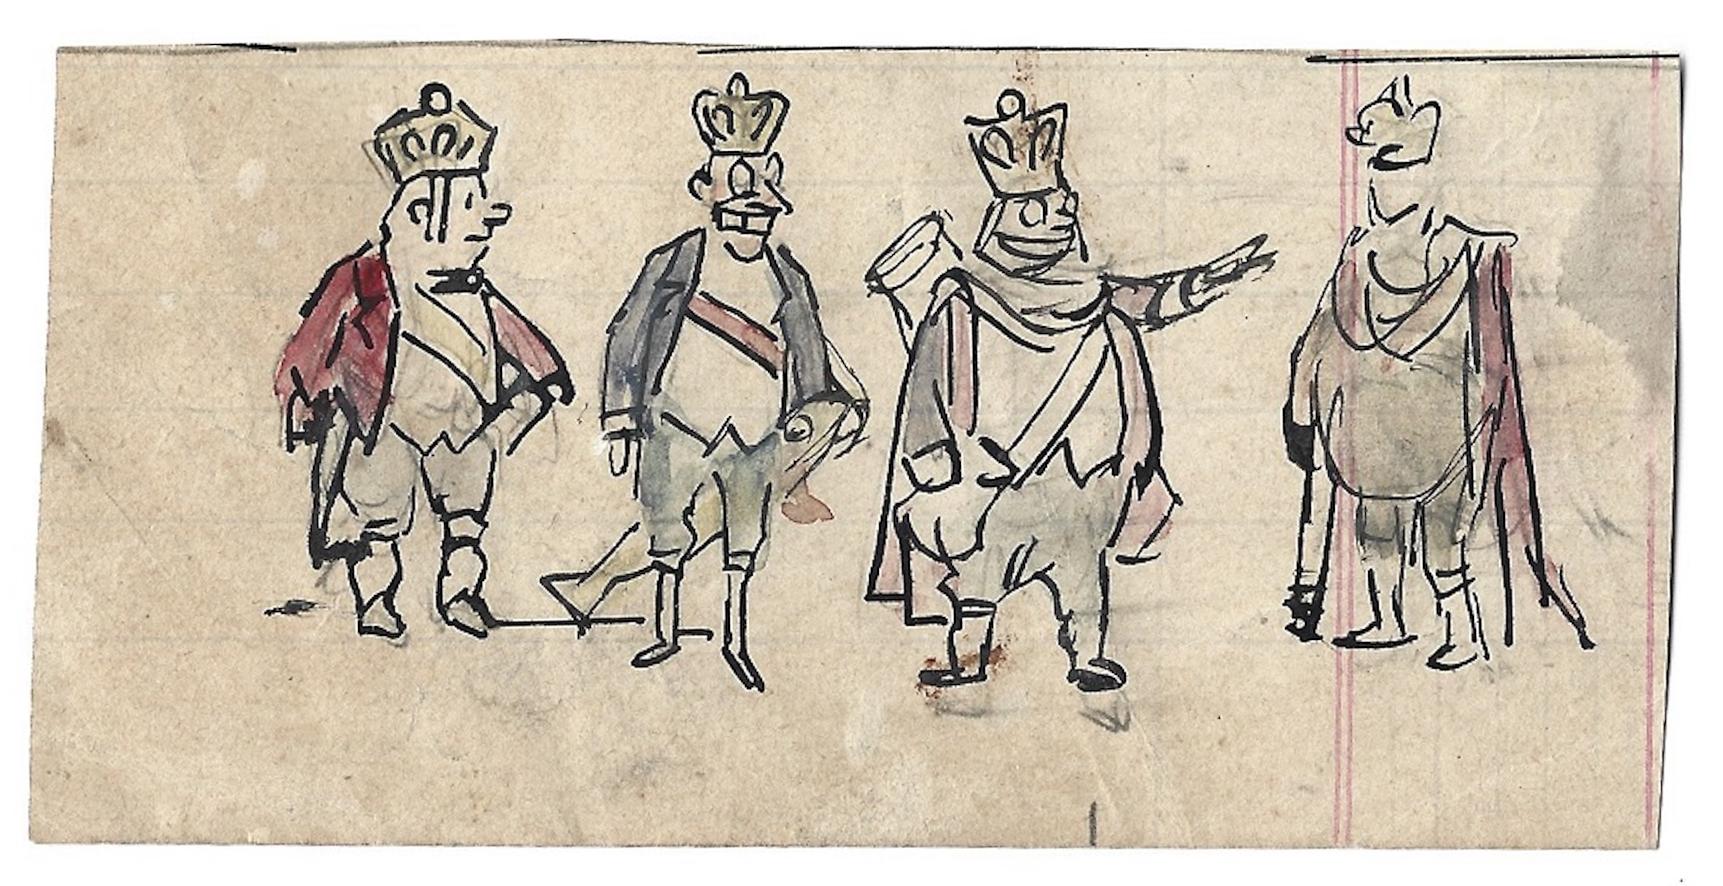 Vier Könige ist eine Original-Farbzeichnung auf Papier, die um 1910 von dem italienischen satirischen Illustrator Gabriele Galantara (Montelupone, Italien, 1867 - Rom, 1937) angefertigt wurde.

Ein China-Tusche und Aquarell, von kleinen Dimensionen,